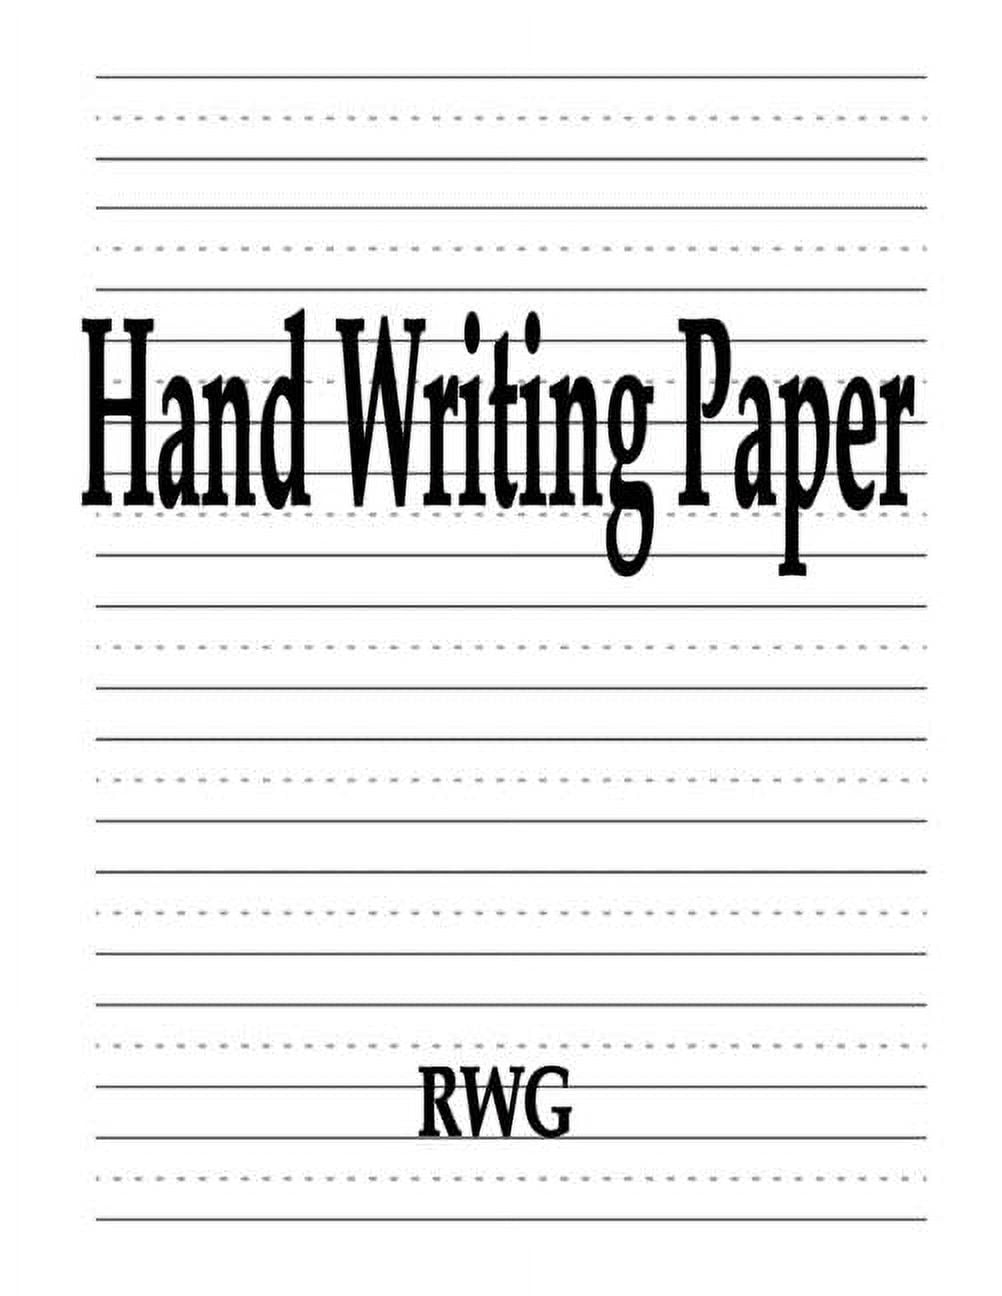 Printable Handwriting Paper